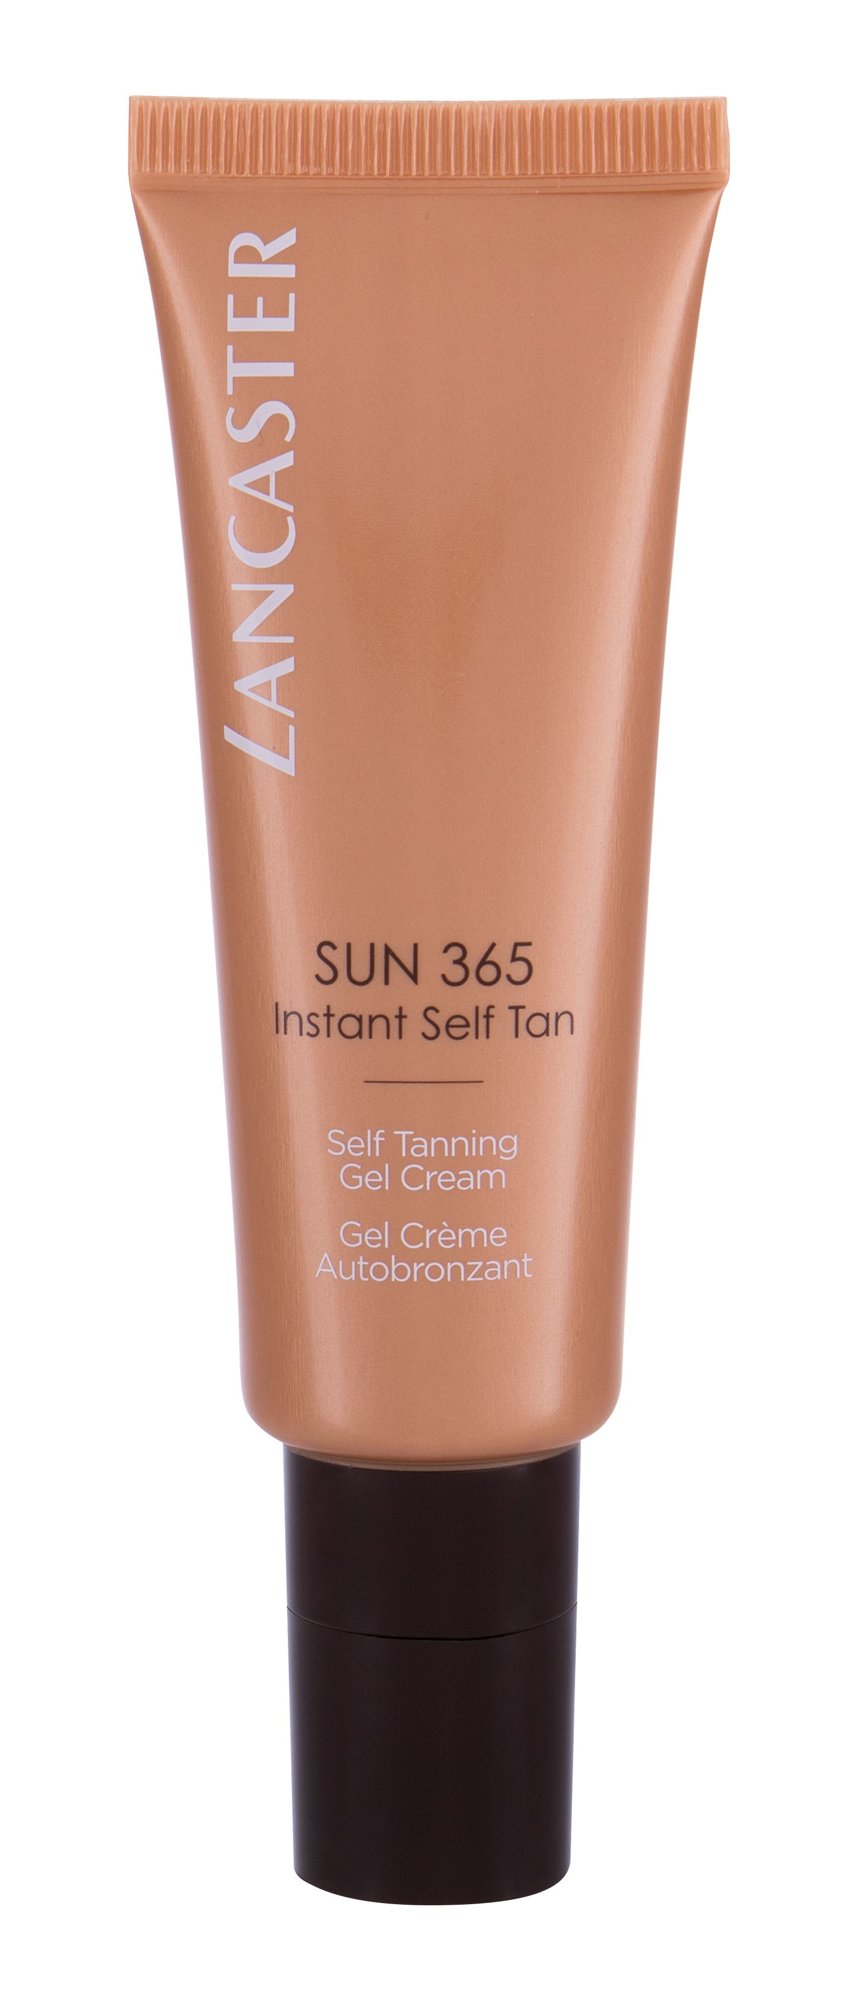 Lancaster 365 Sun Instant Self Tan Gel Cream savaiminio įdegio kremas